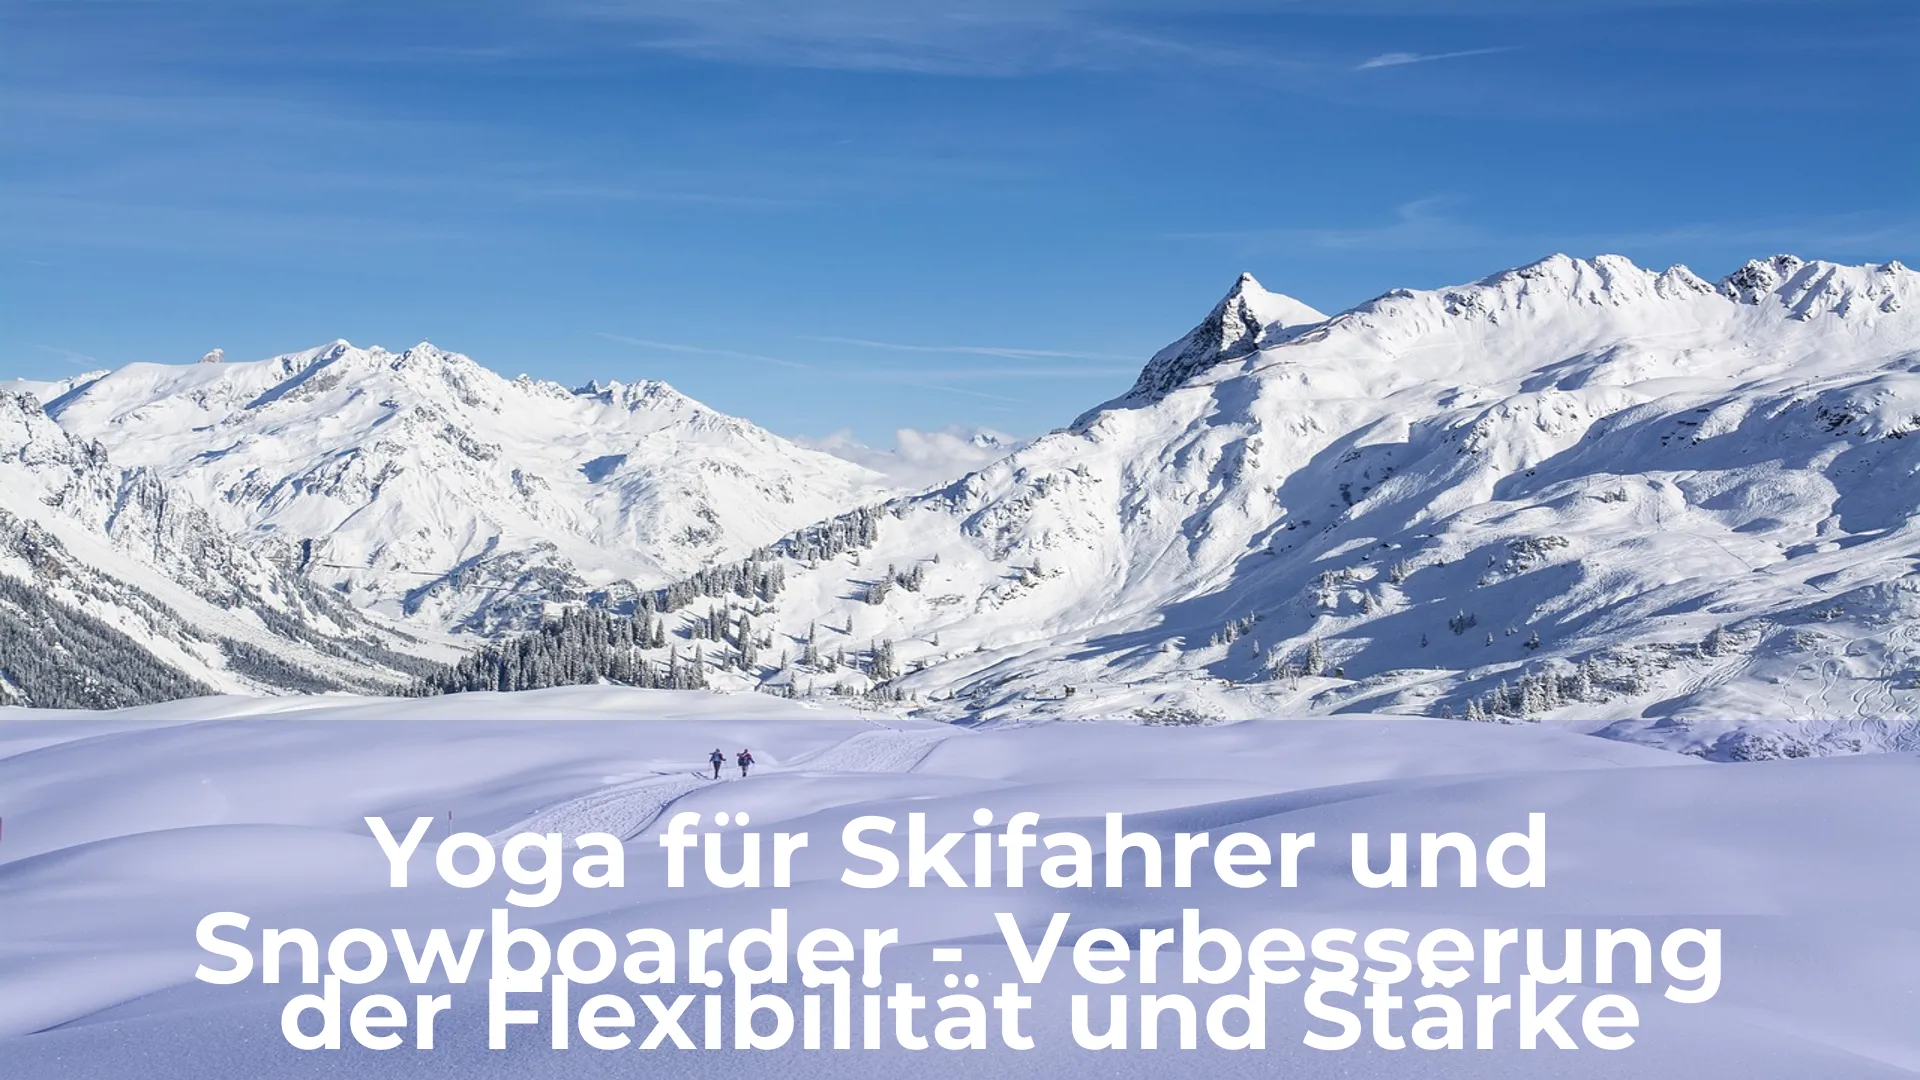 Yoga für skifahrer und snowboarder verbesserung der flexibilität und stärke